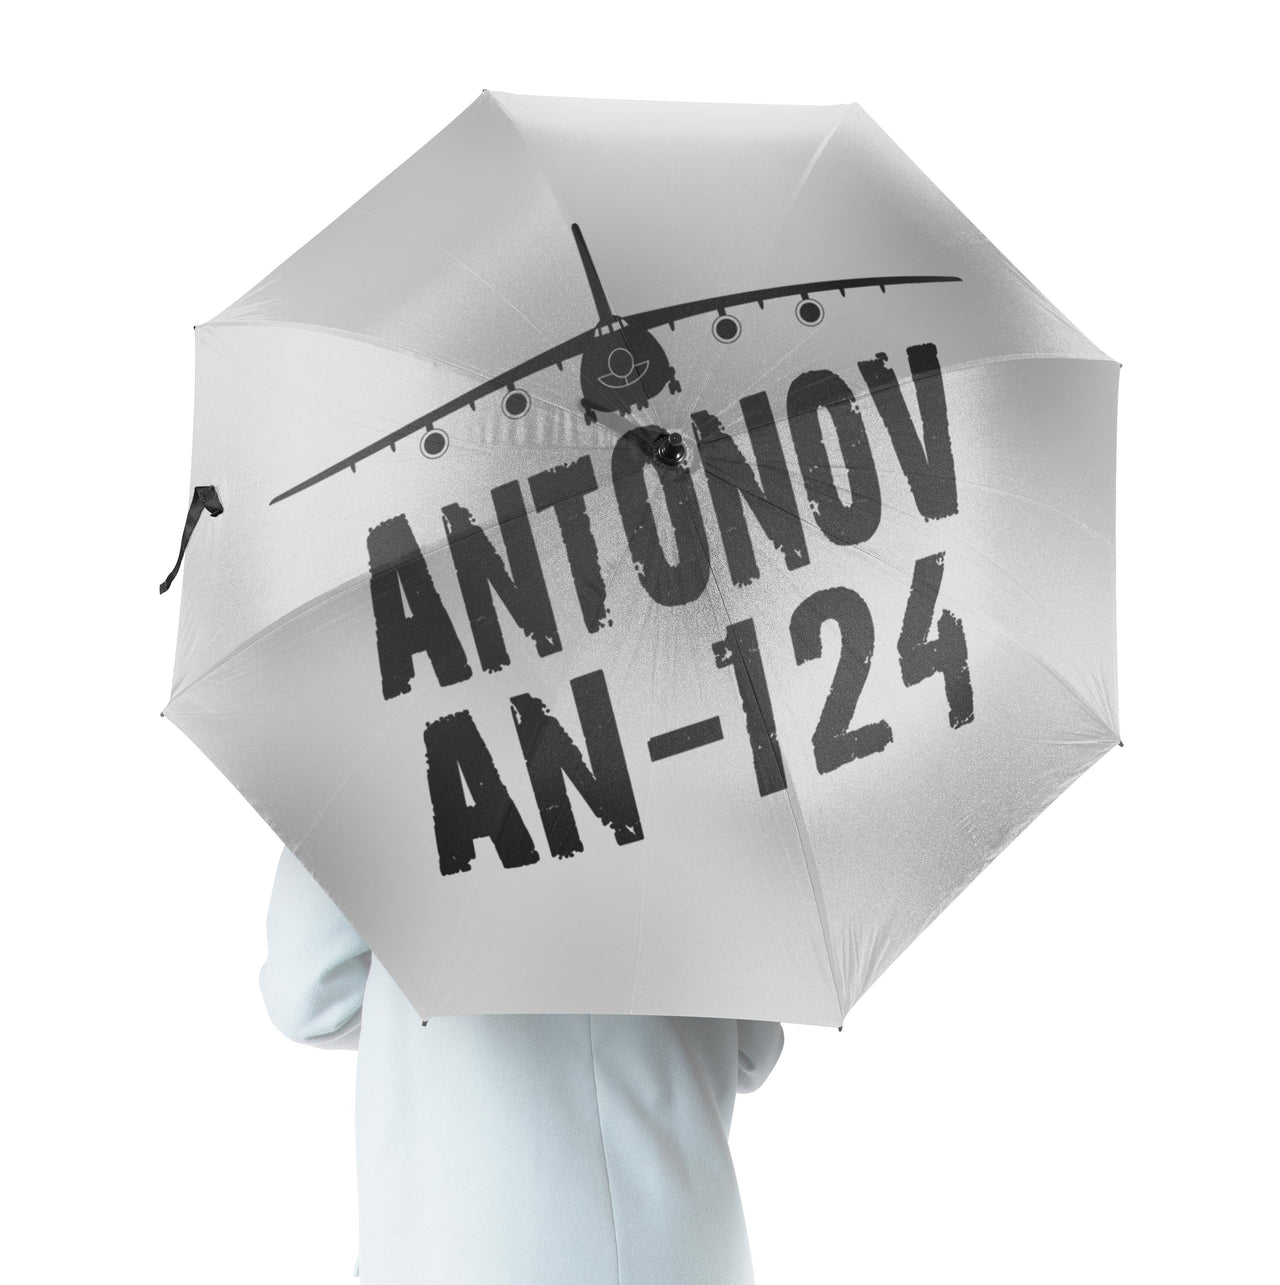 Antonov AN-124 & Plane Designed Umbrella